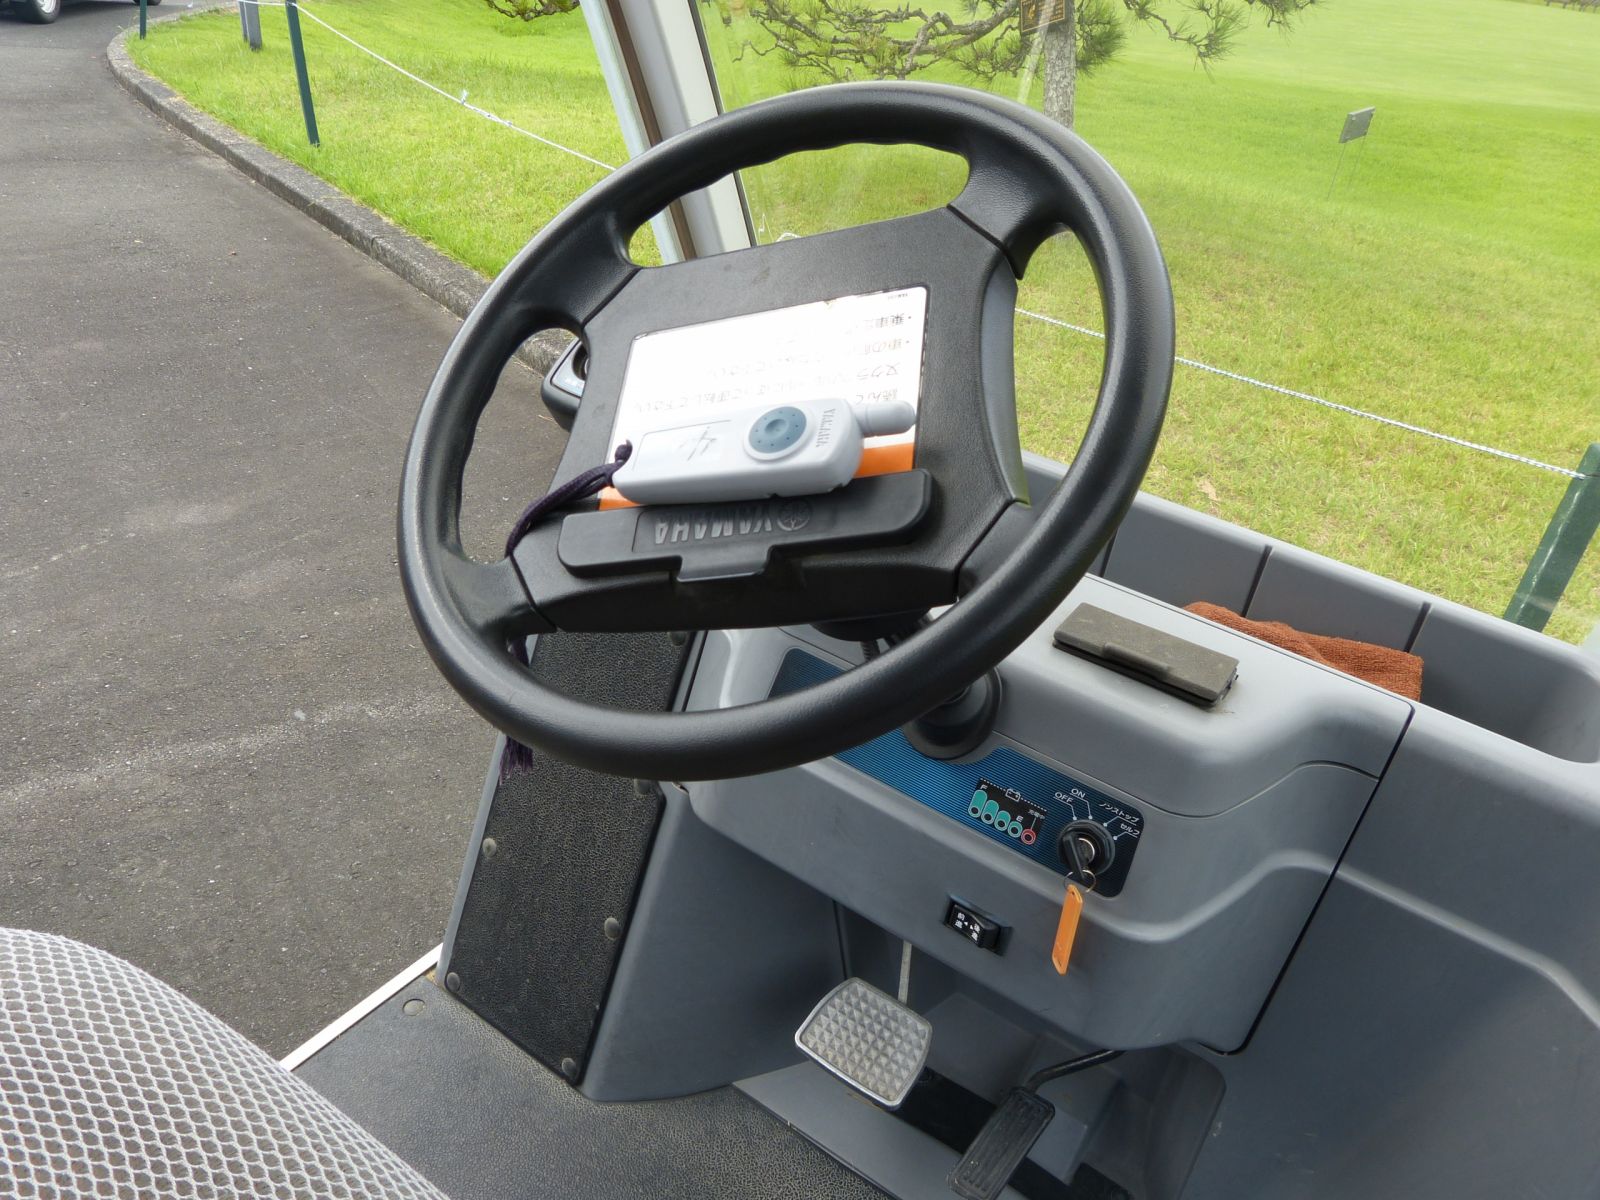 無人球車在日本相當普遍，靠著道路下方埋設的感應器前進，採一鍵式操作，並配備GPS系統，簡便舒適又安全。